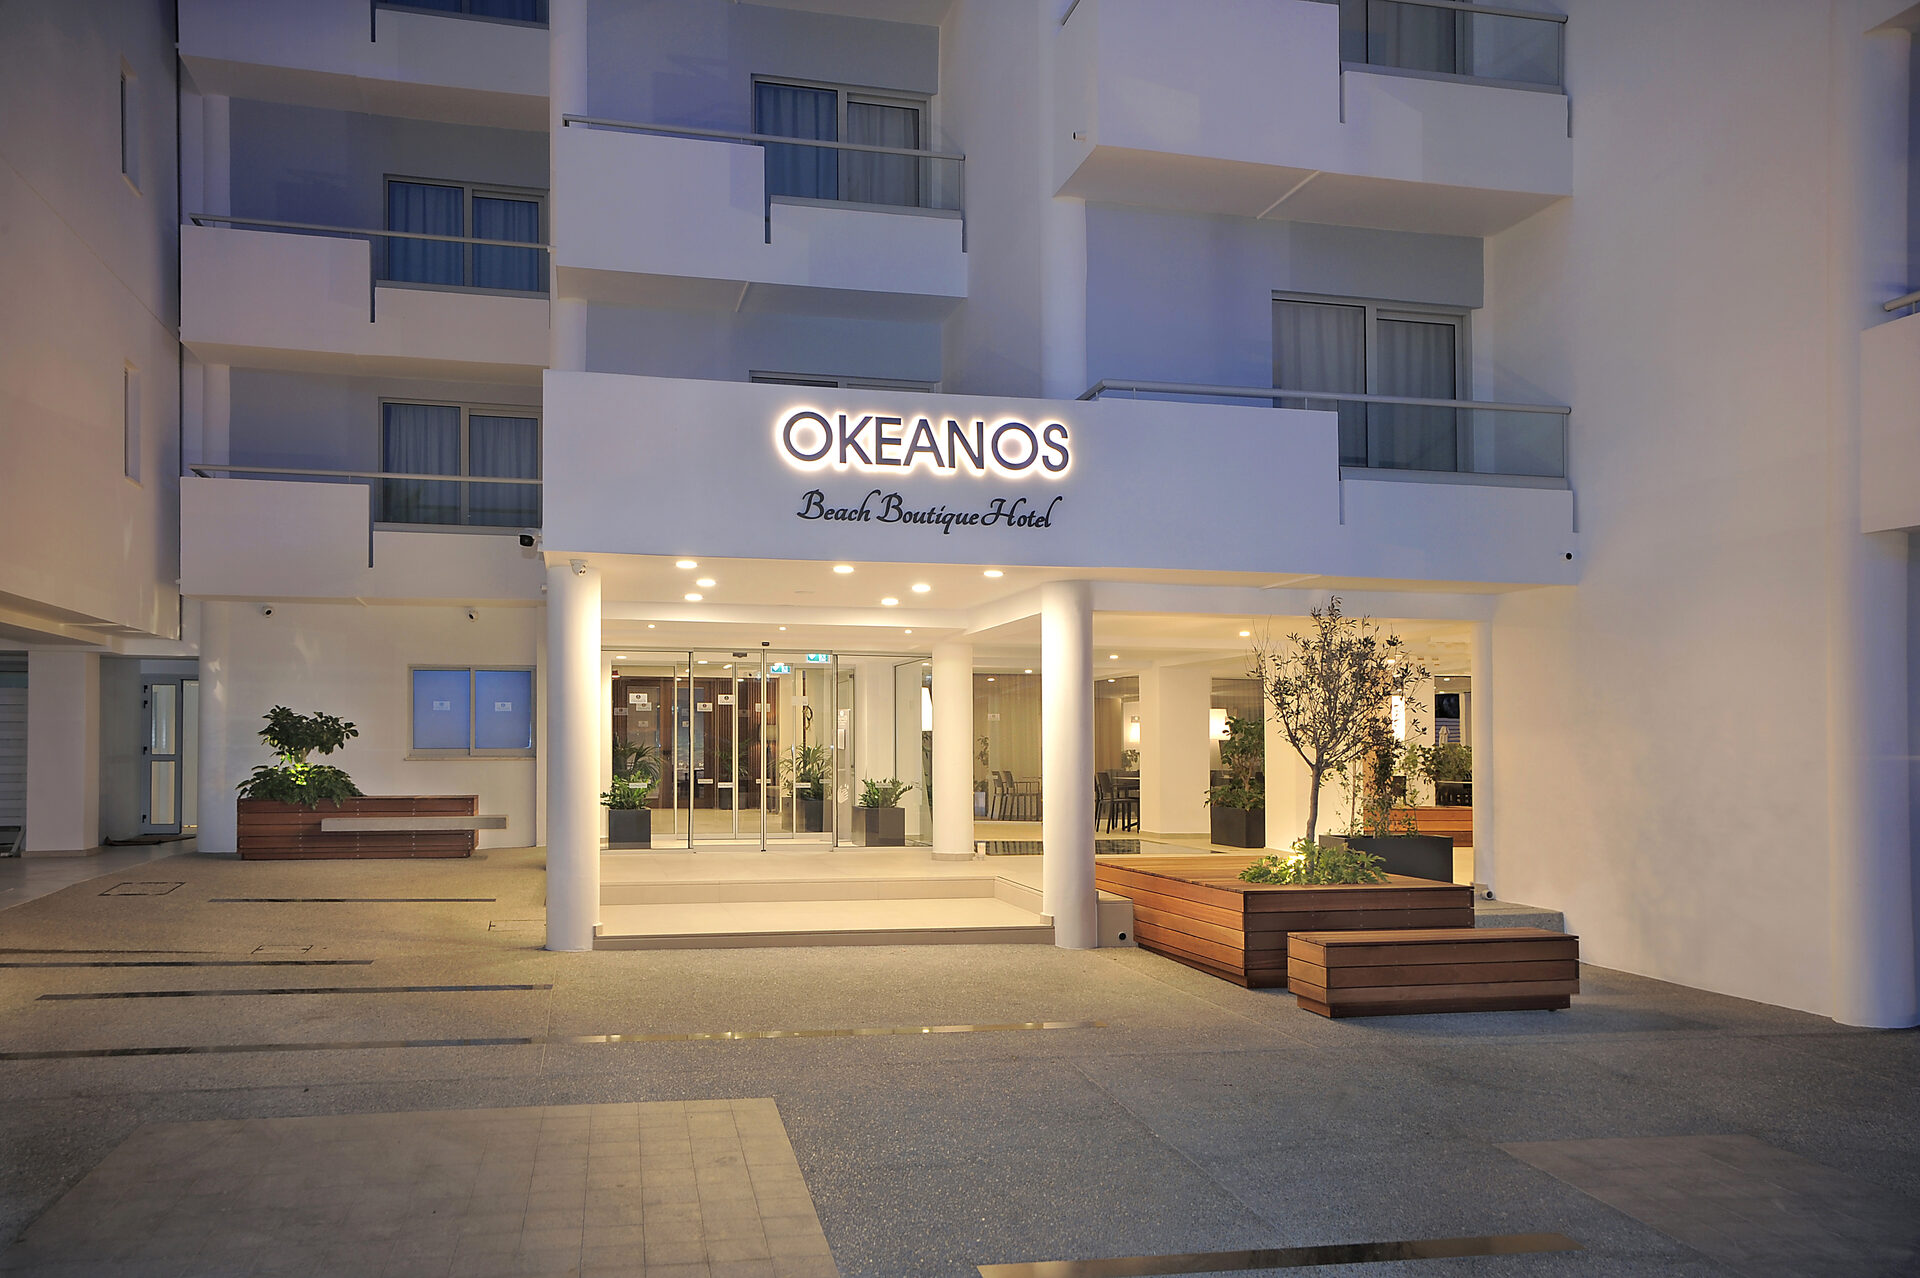 Okeanos Beach Boutique Hotel